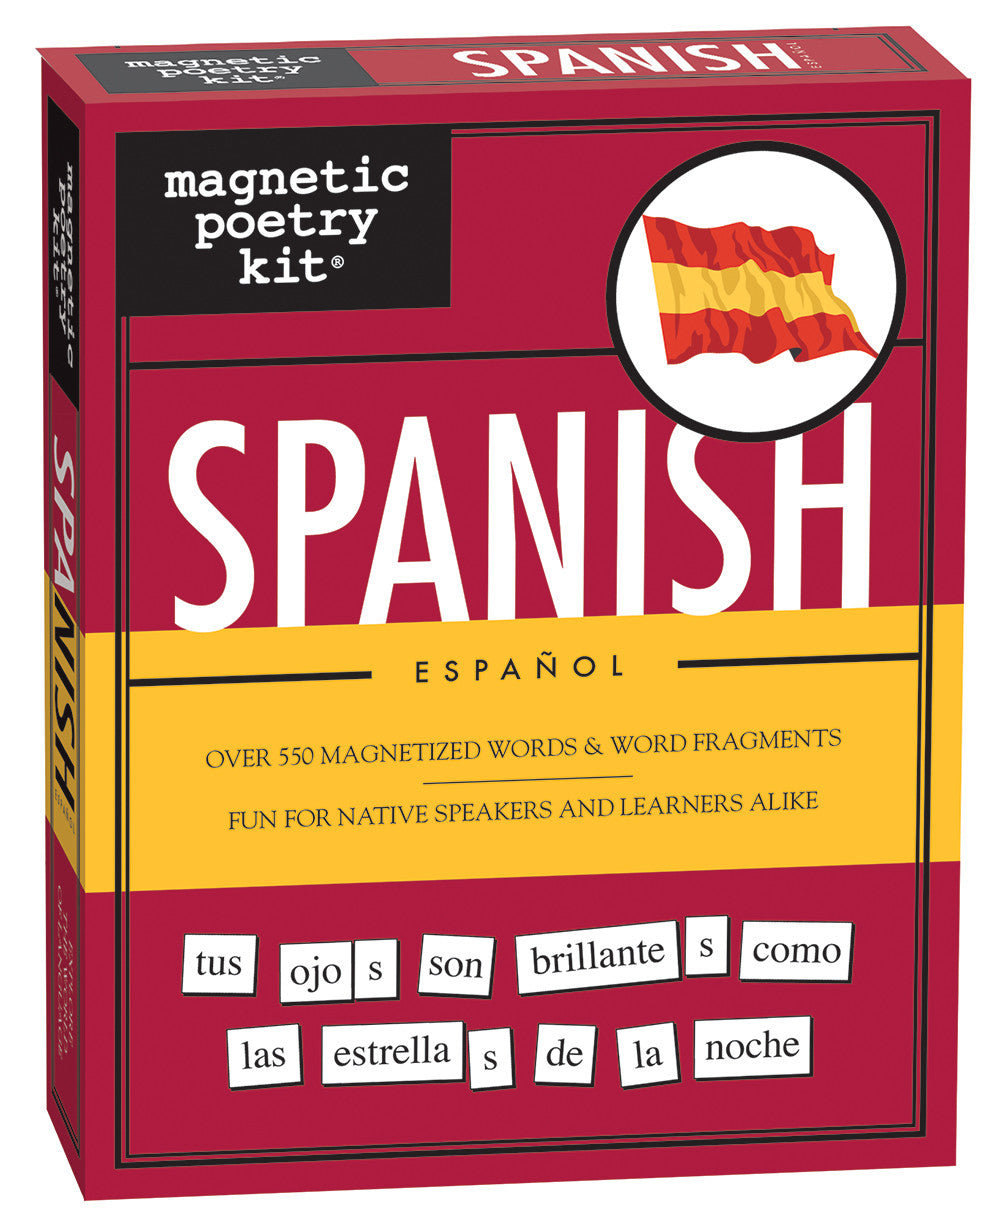 Spanish language Wooden Letters Tiles Complete Set 100 pcs